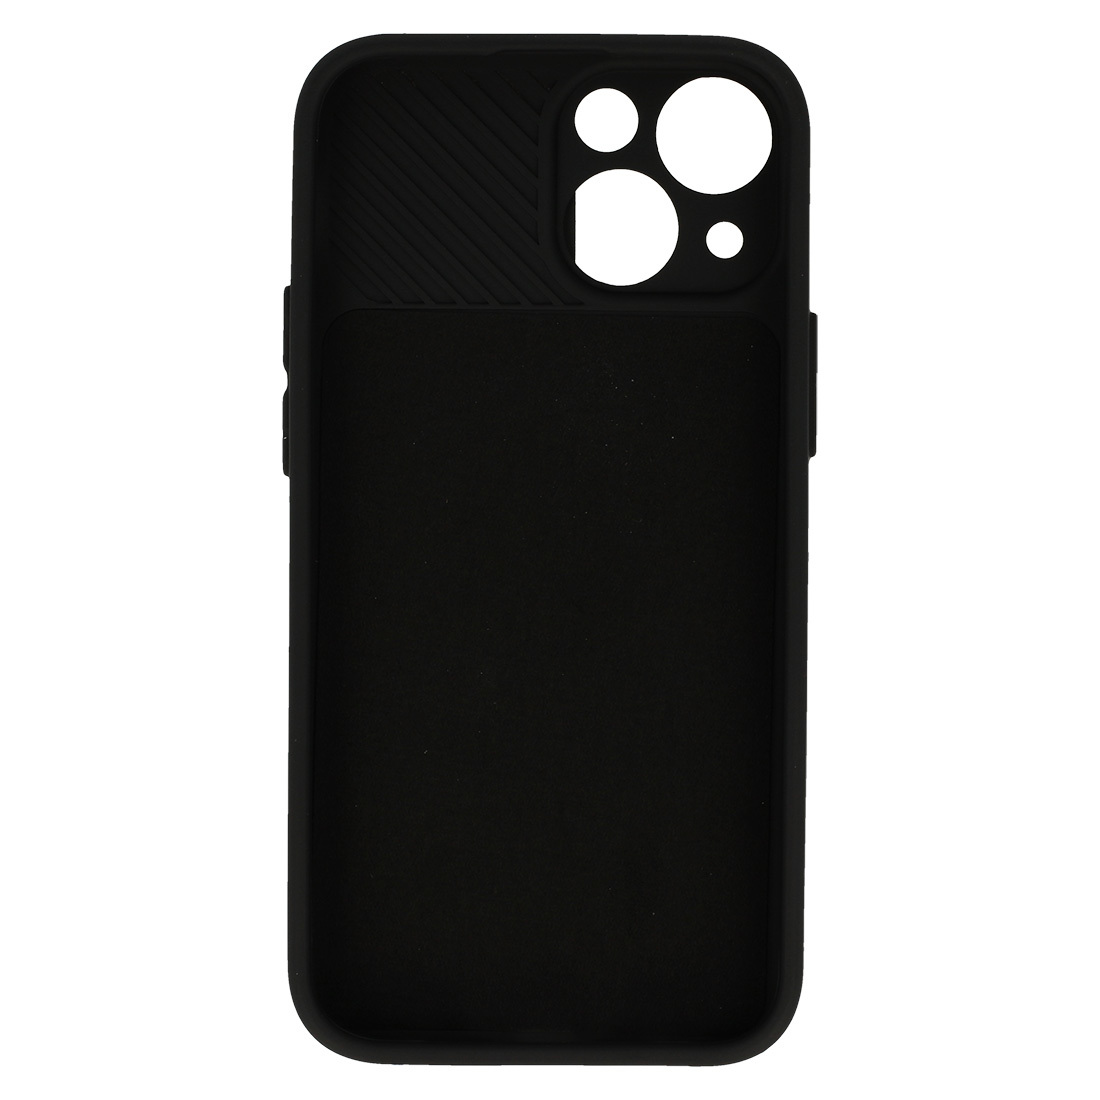 Pokrowiec etui z elastycznego TPU Camshield Soft Case czarne APPLE iPhone 7 Plus / 5